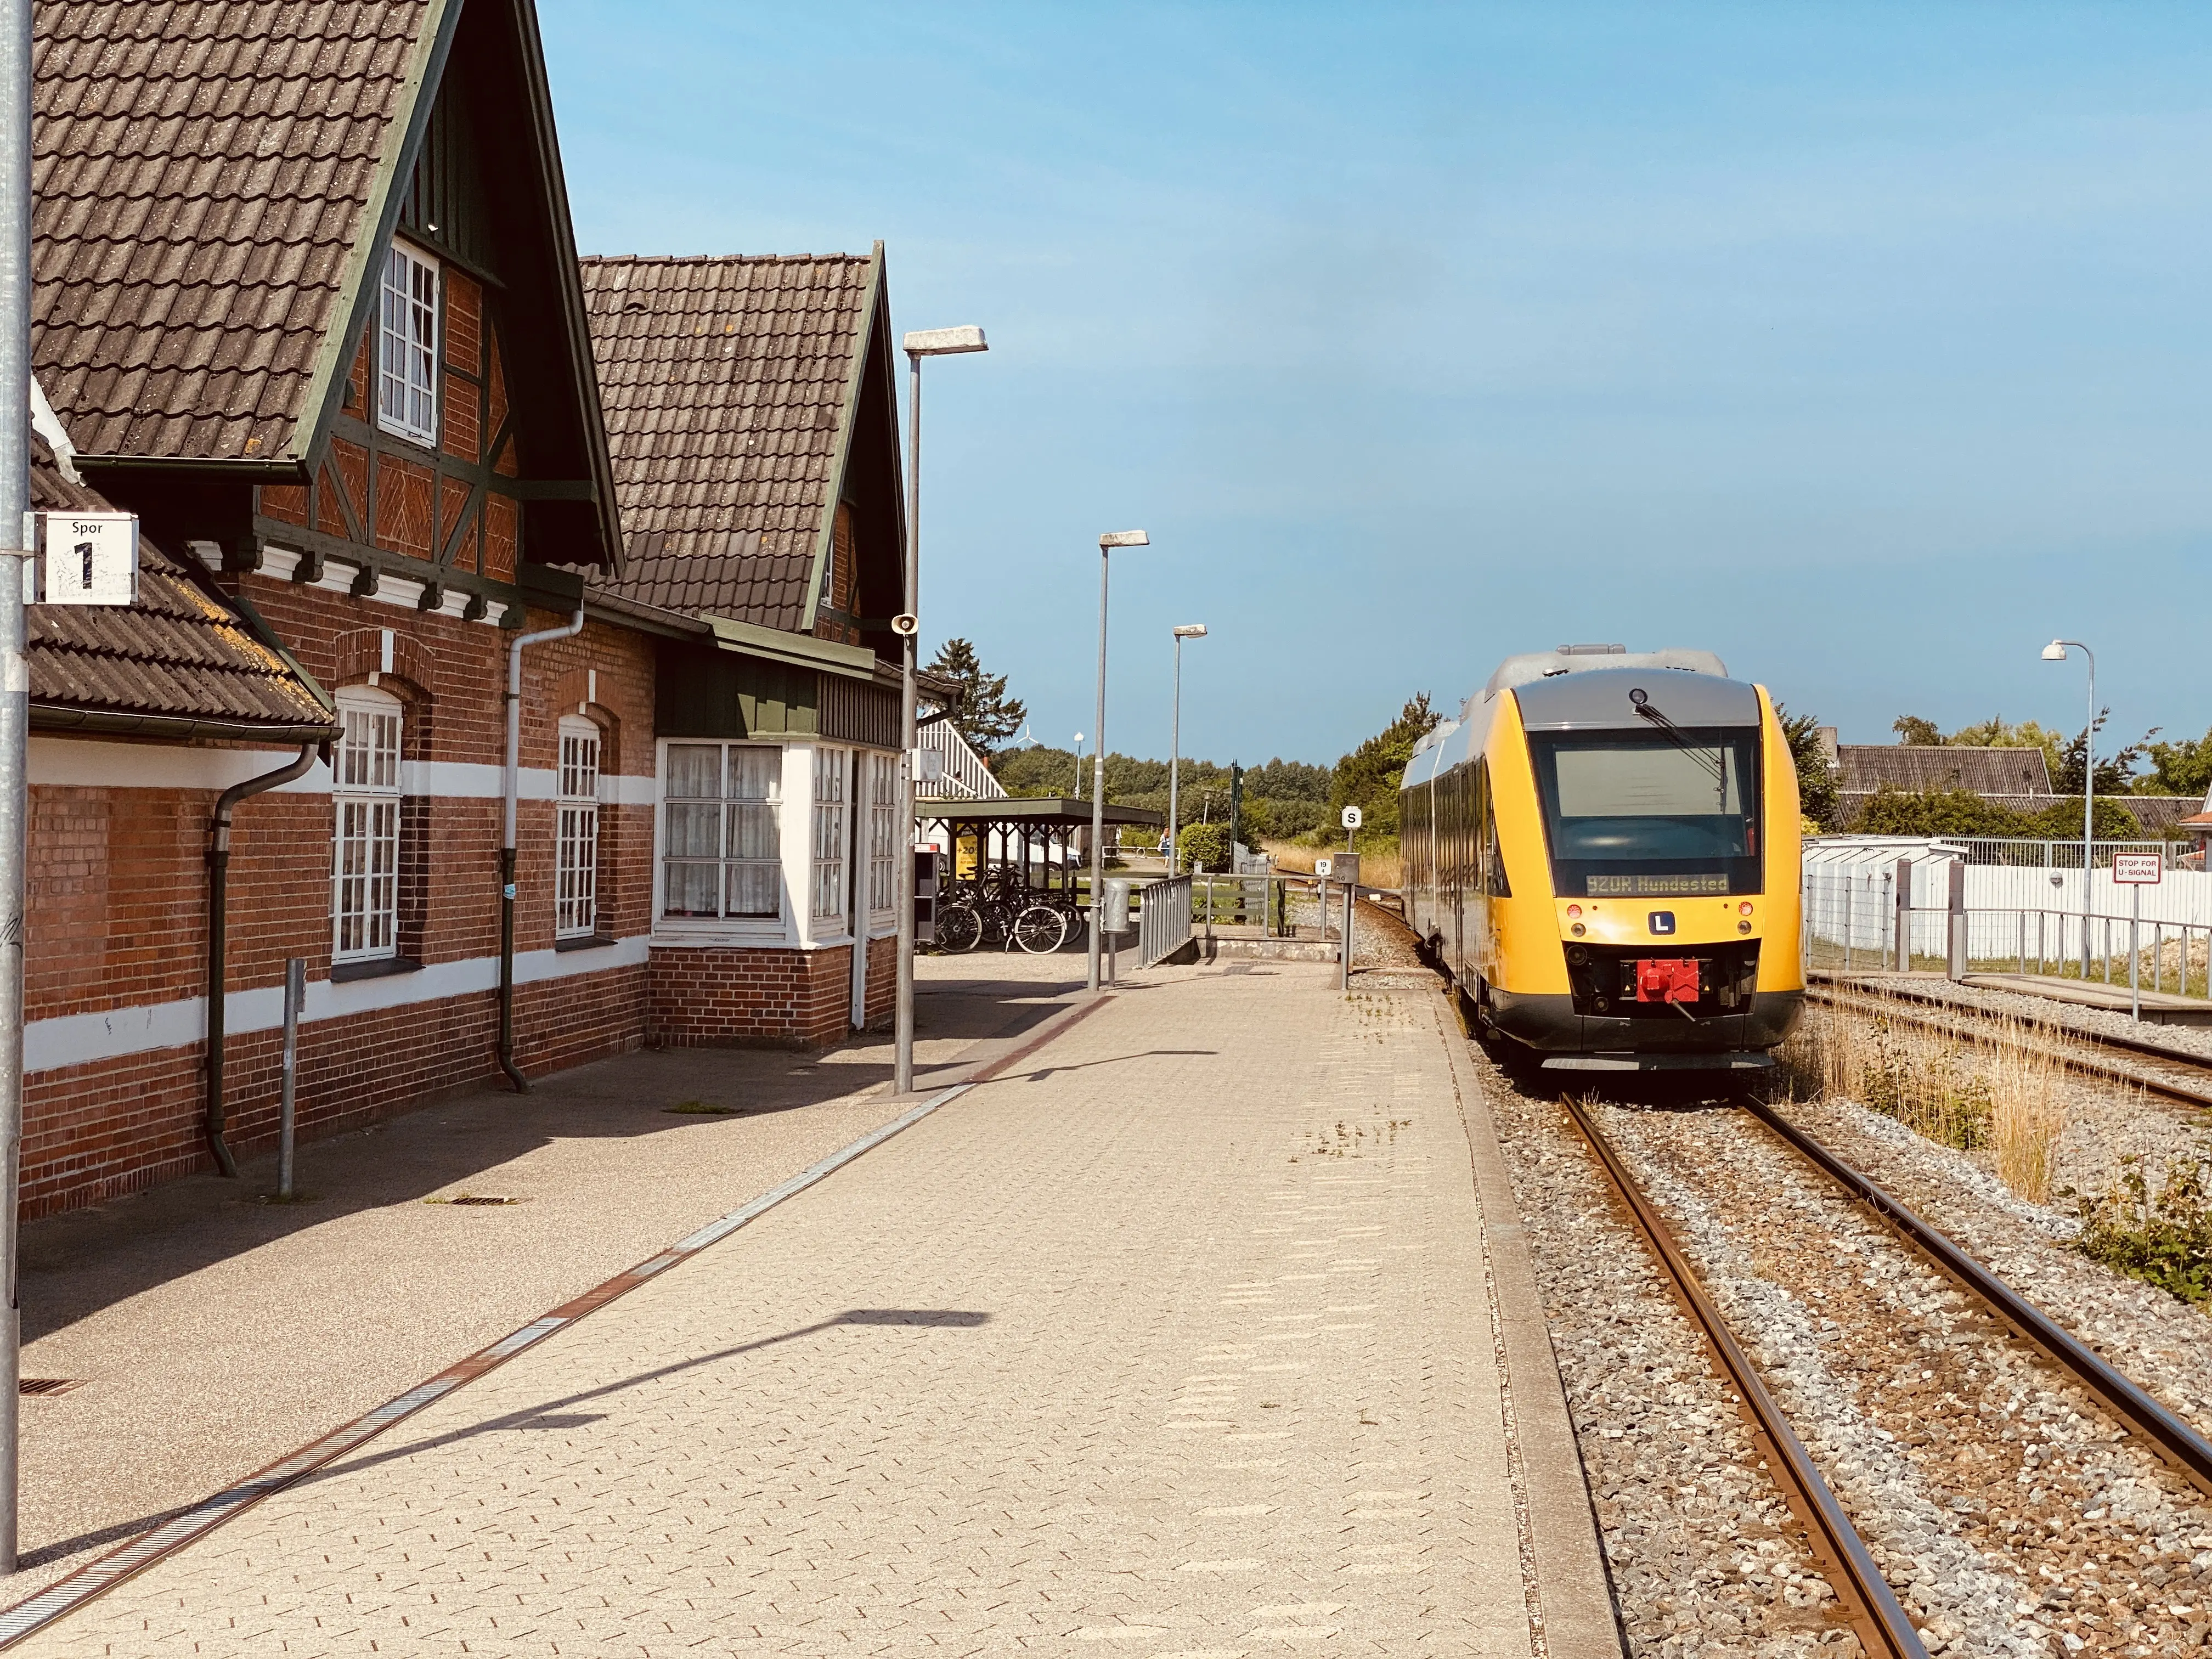 Billede af tog ud for Ølsted Station.